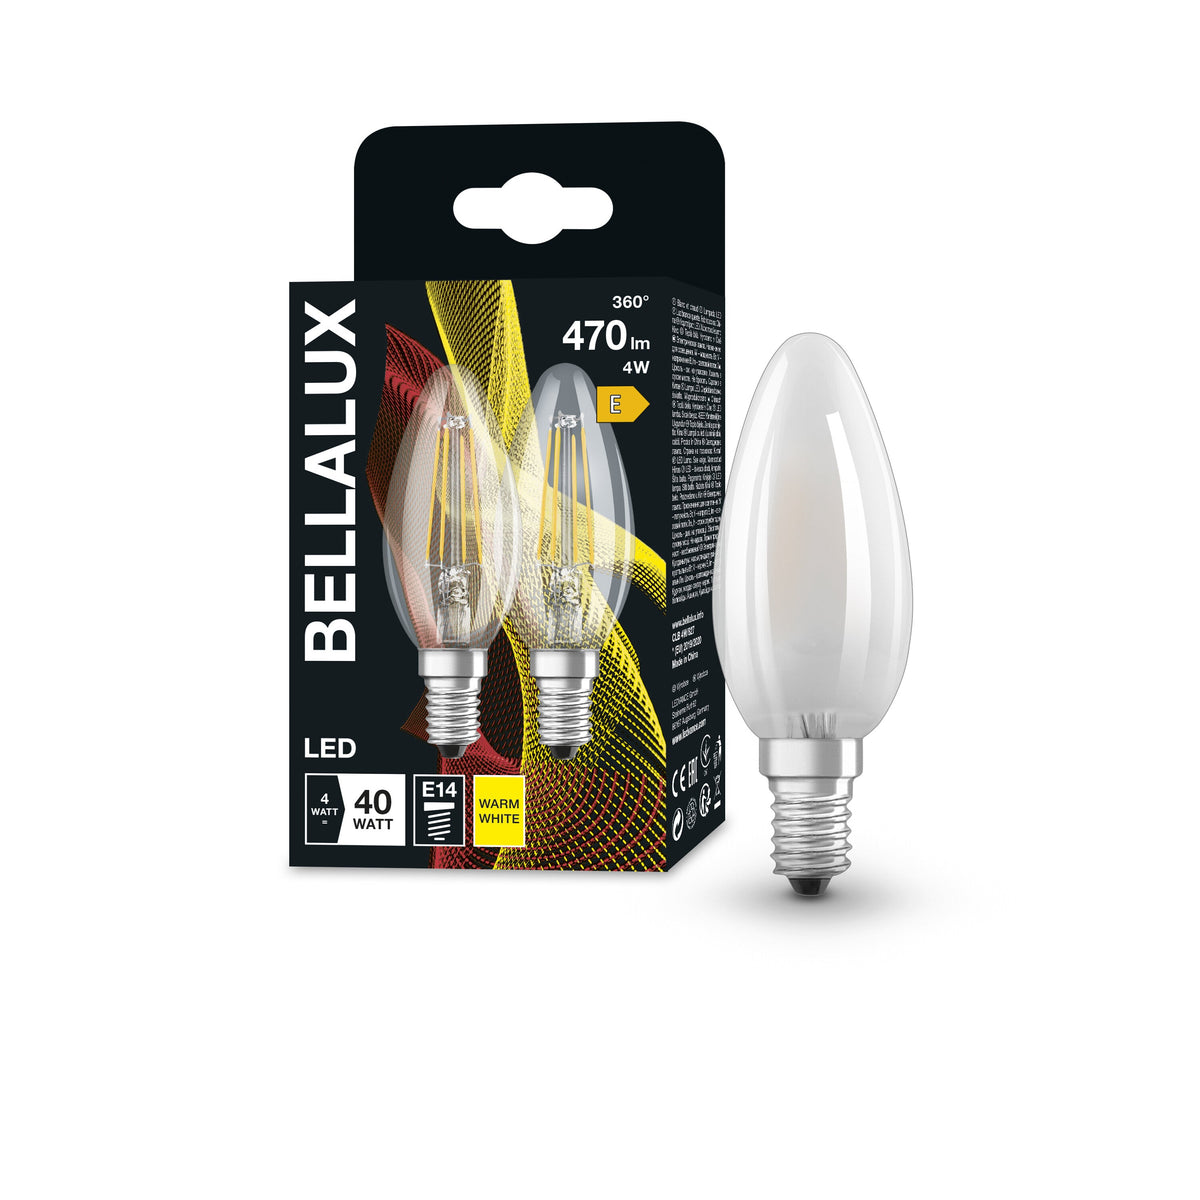 Lampadina LED BELLALUX, attacco: E14, bianco caldo, 2700K, 4W, ricambio per lampadina da 40W, trasparente, ST CLAS B